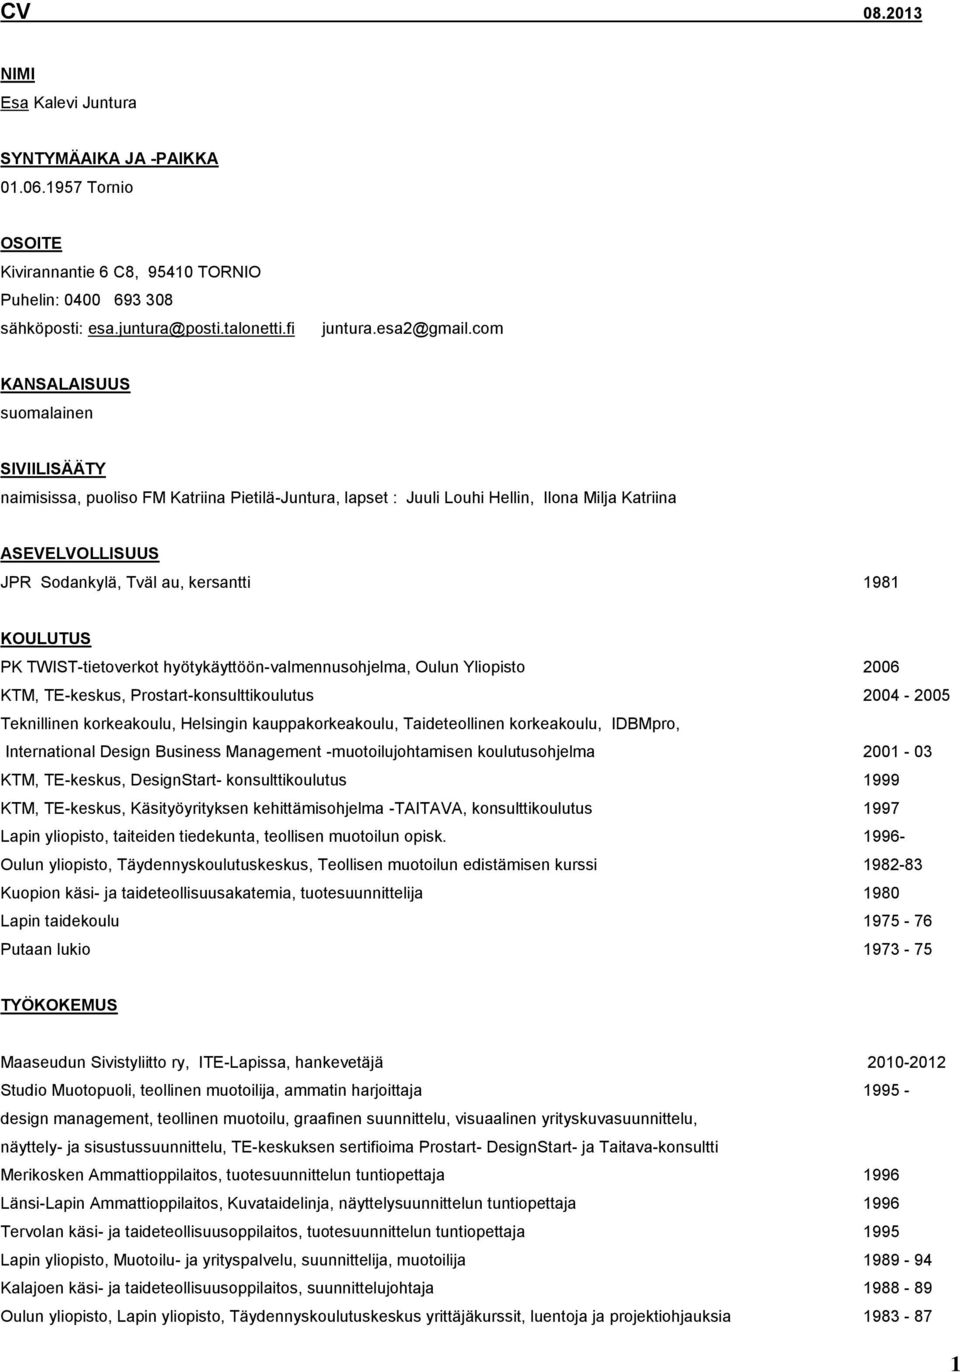 KOULUTUS PK TWIST-tietoverkot hyötykäyttöön-valmennusohjelma, Oulun Yliopisto 2006 KTM, TE-keskus, Prostart-konsulttikoulutus 2004-2005 Teknillinen korkeakoulu, Helsingin kauppakorkeakoulu,